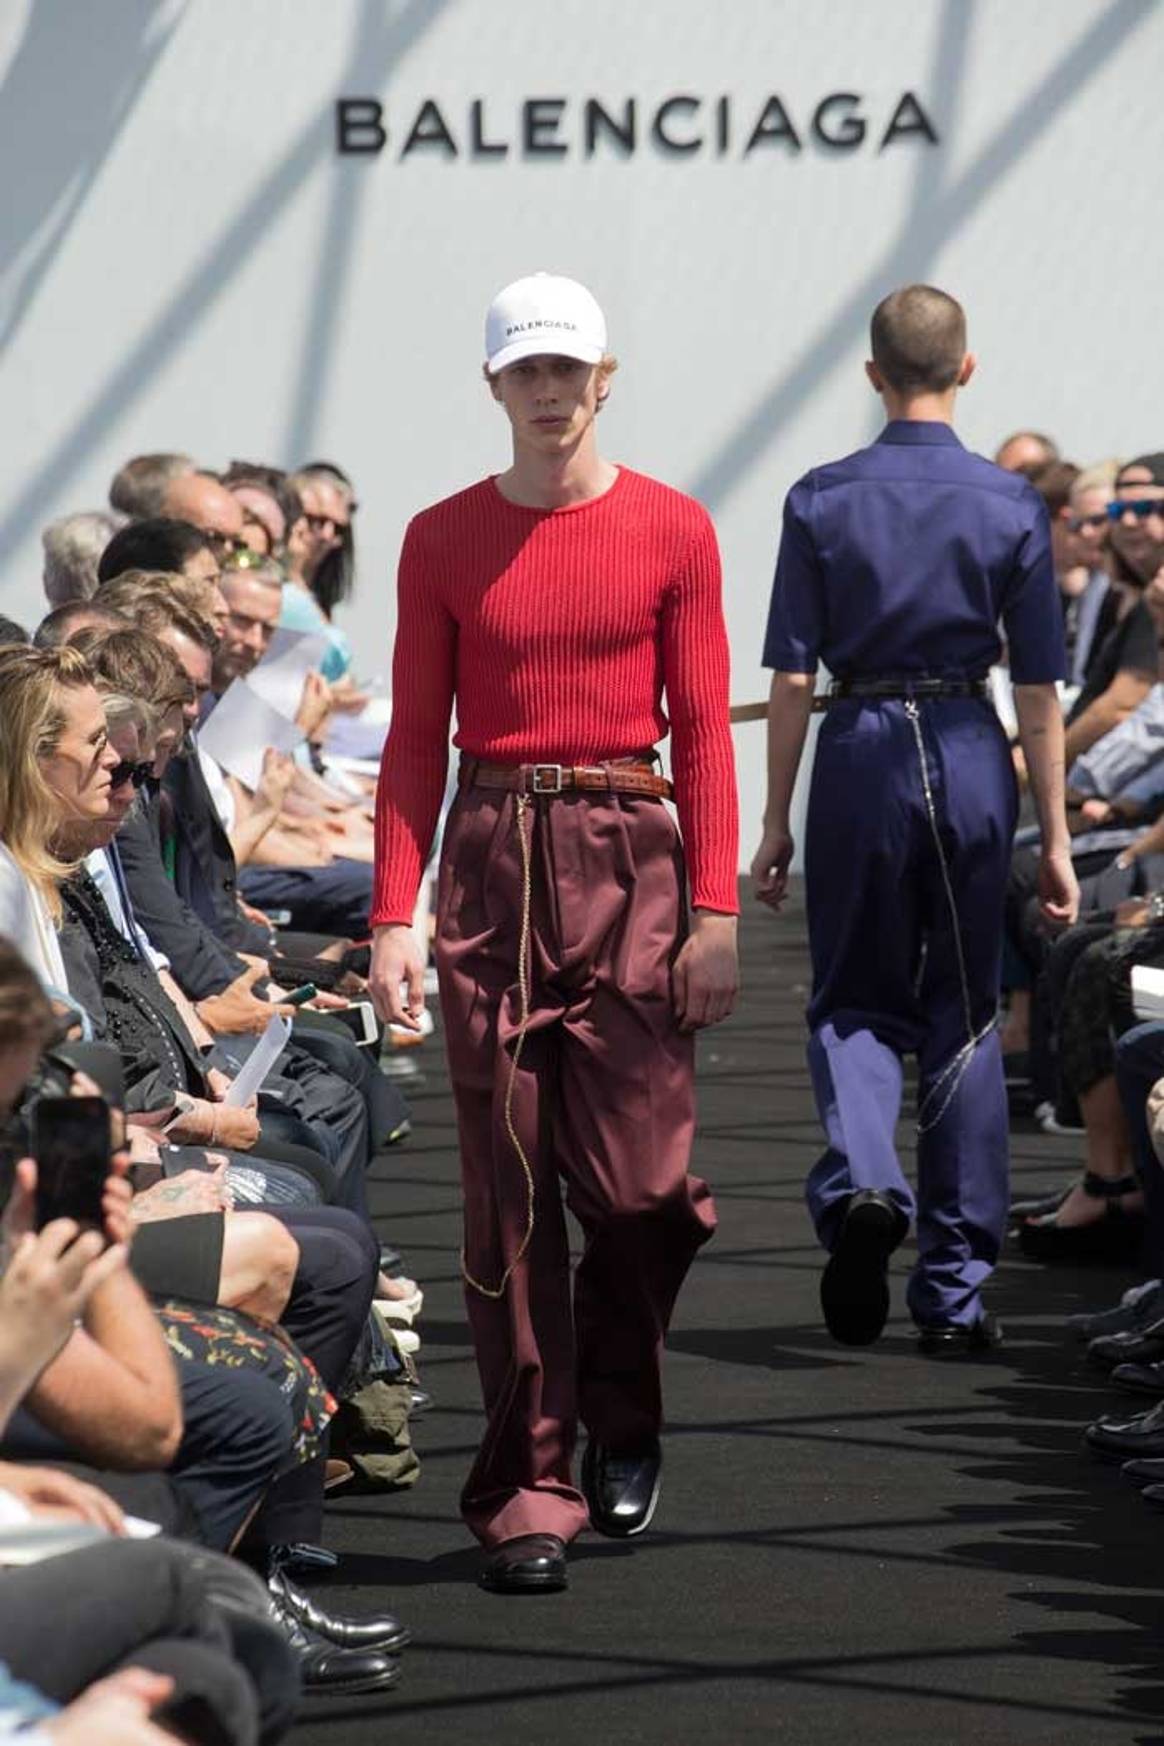 Balenciaga debutó en moda masculina apelando a los códigos del fundador